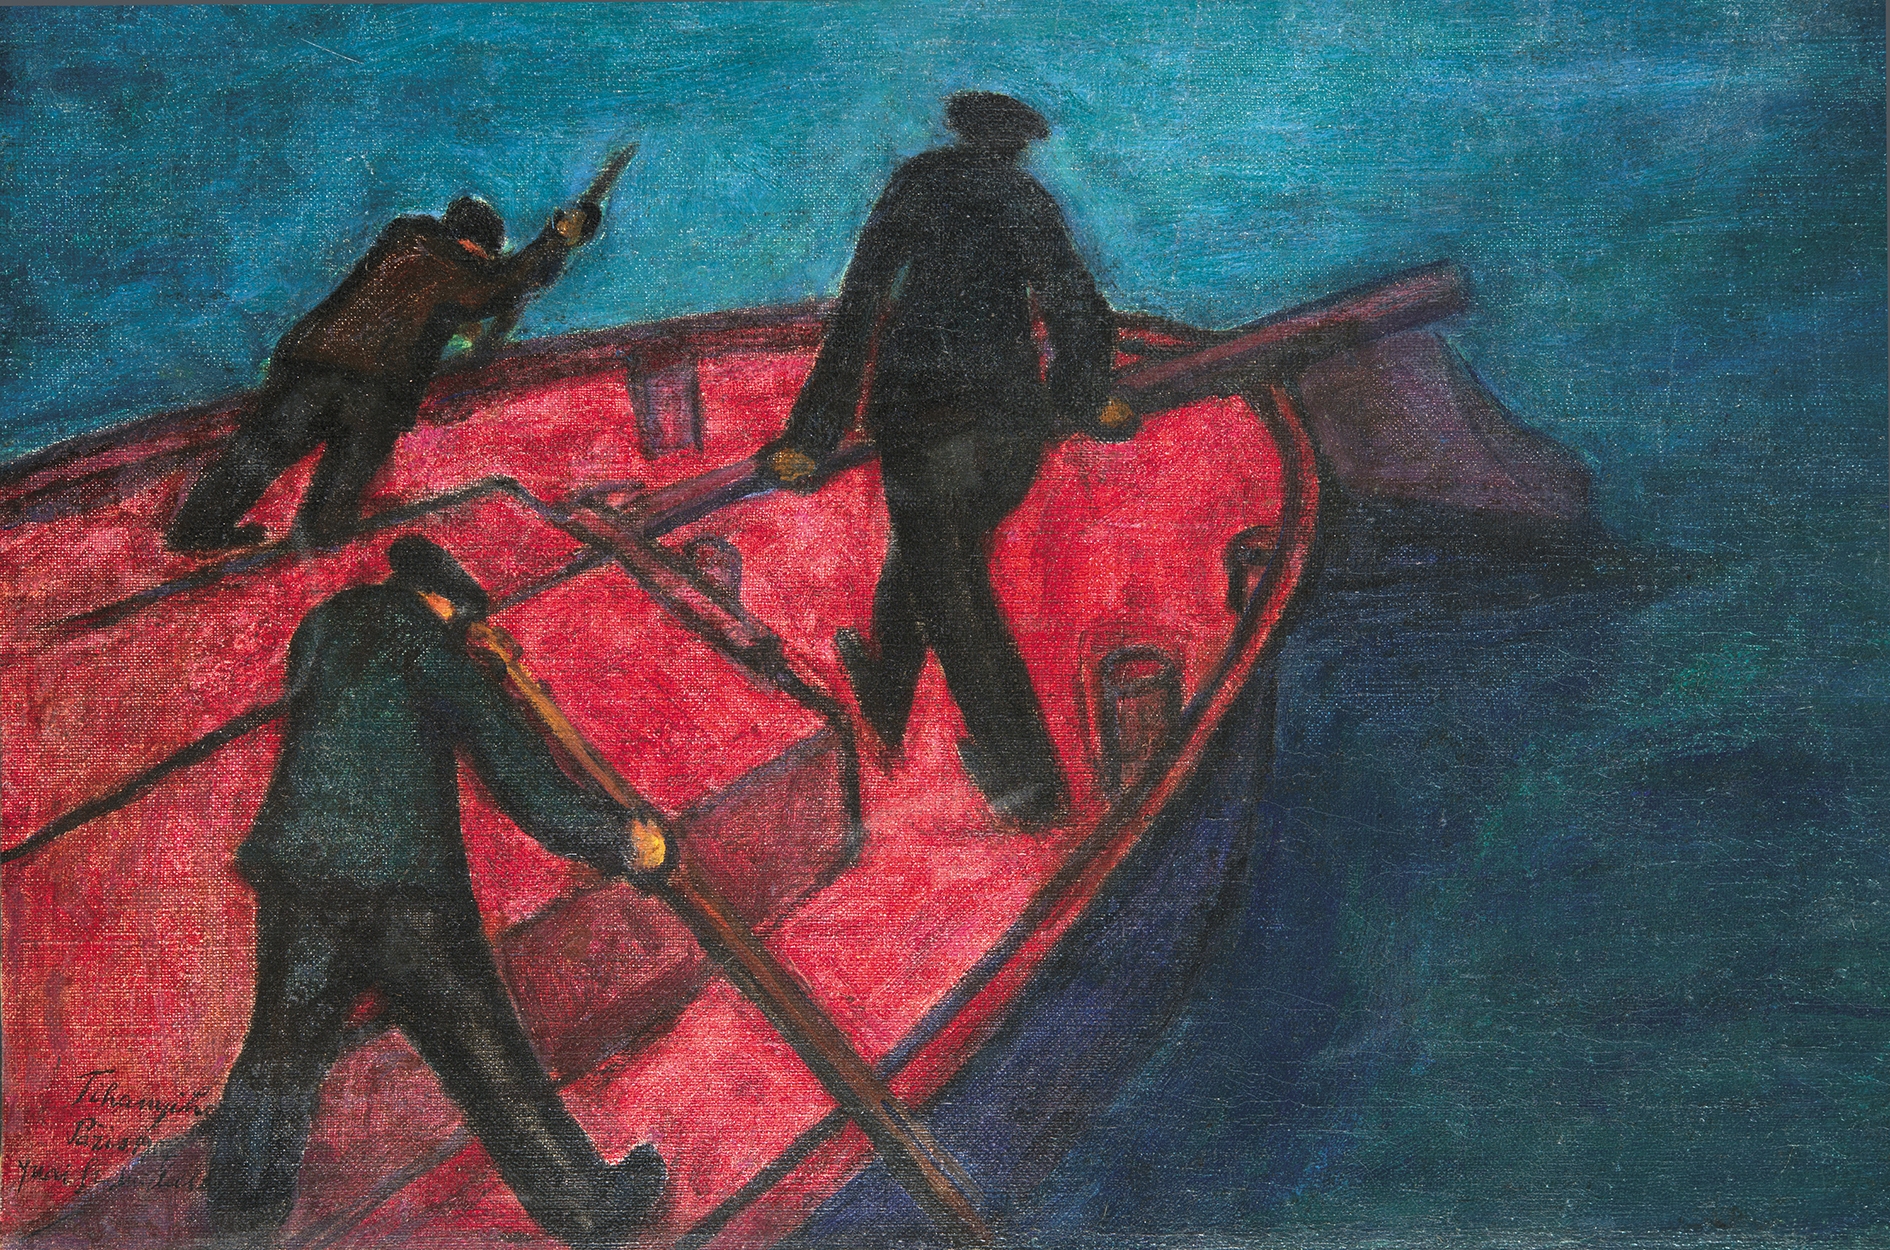 Tihanyi Lajos (1885-1938) Boatmen on the Seine, 1907